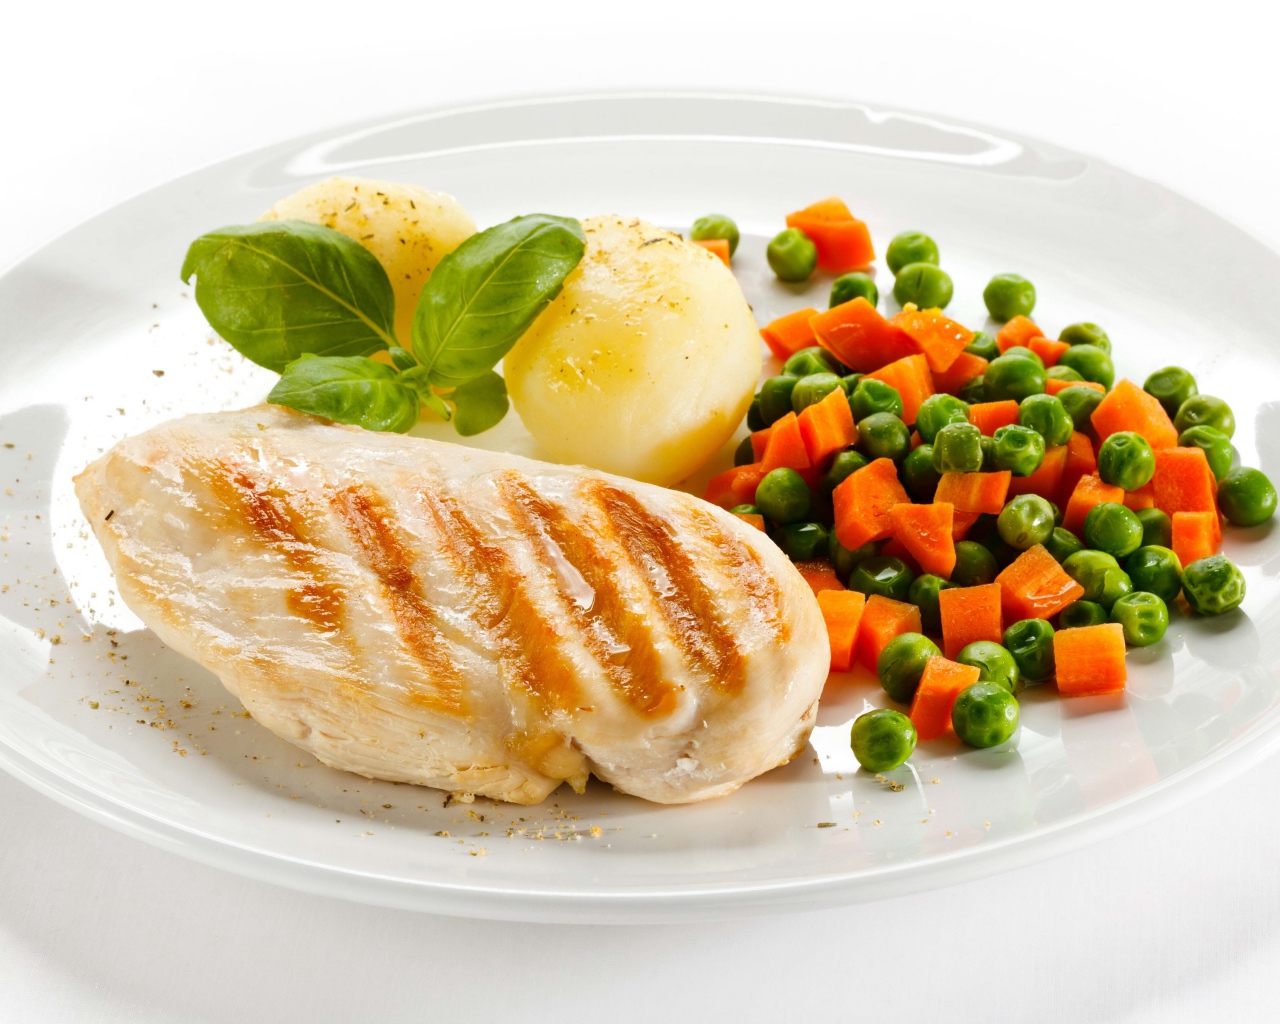 Куриная грудка на белой тарелке с картофелем, морковью и зеленым горошком